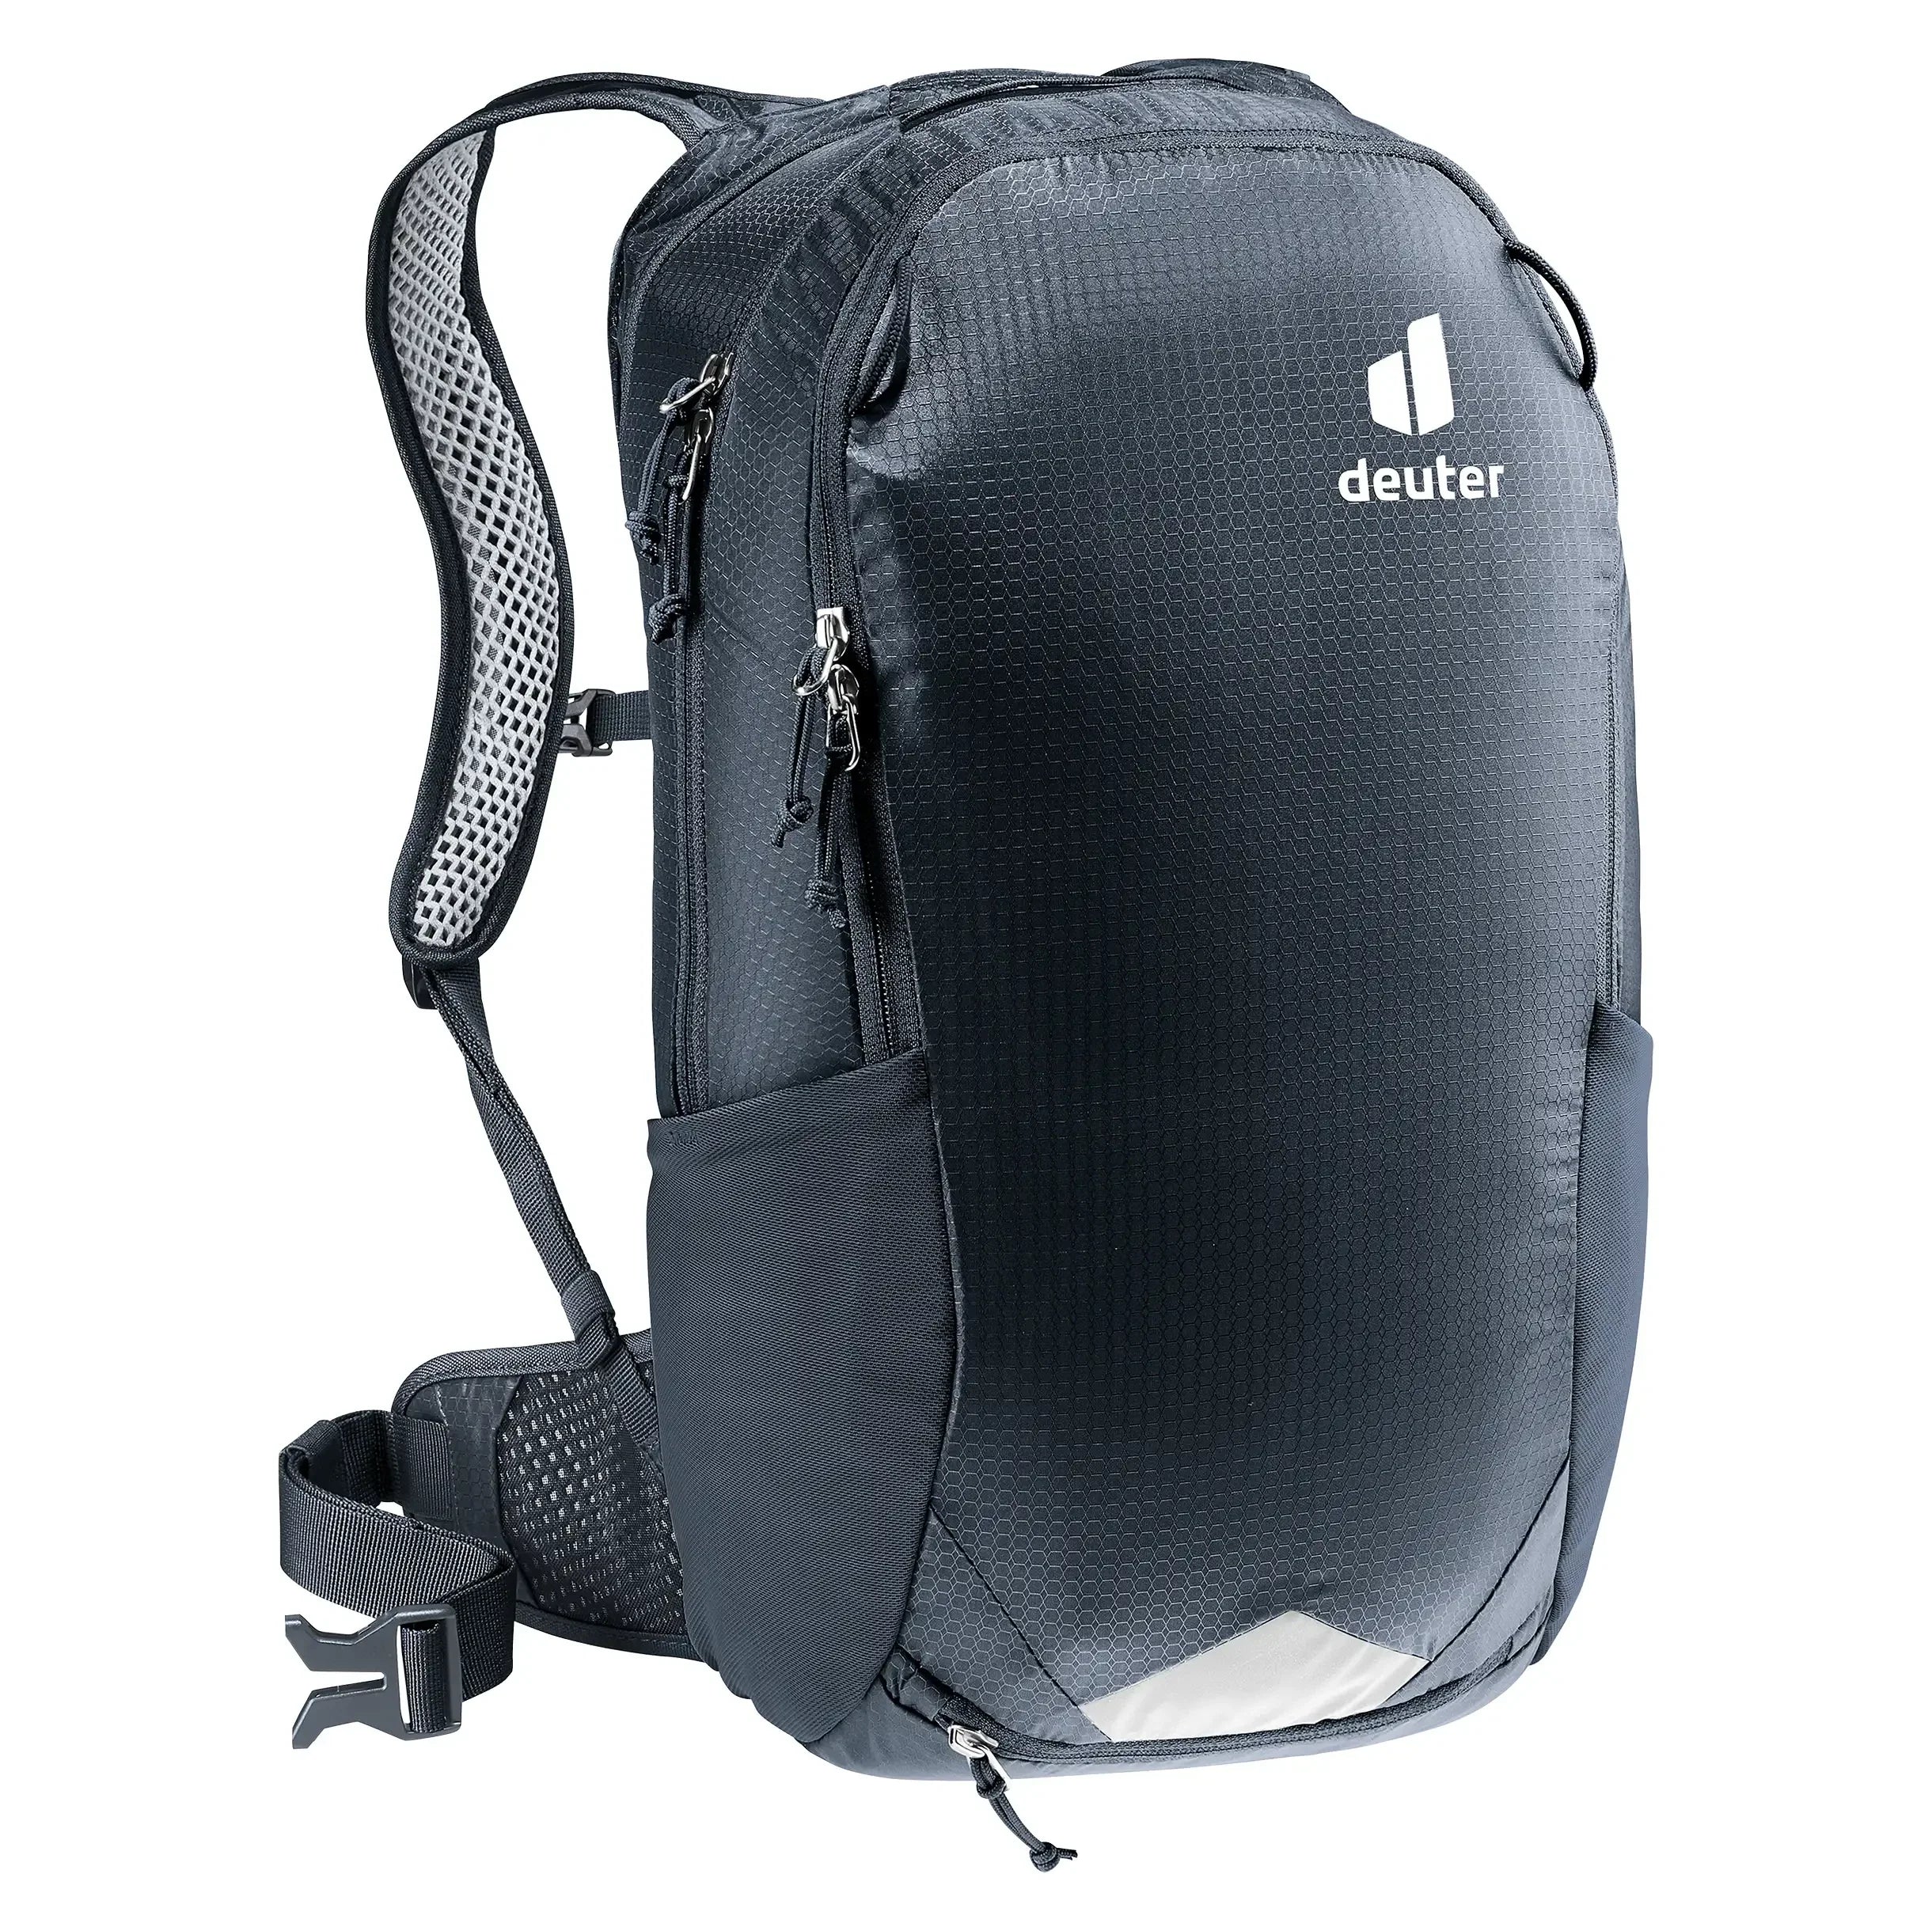 Deuter Bike Race Air 14+3 backpack 46 cm - black